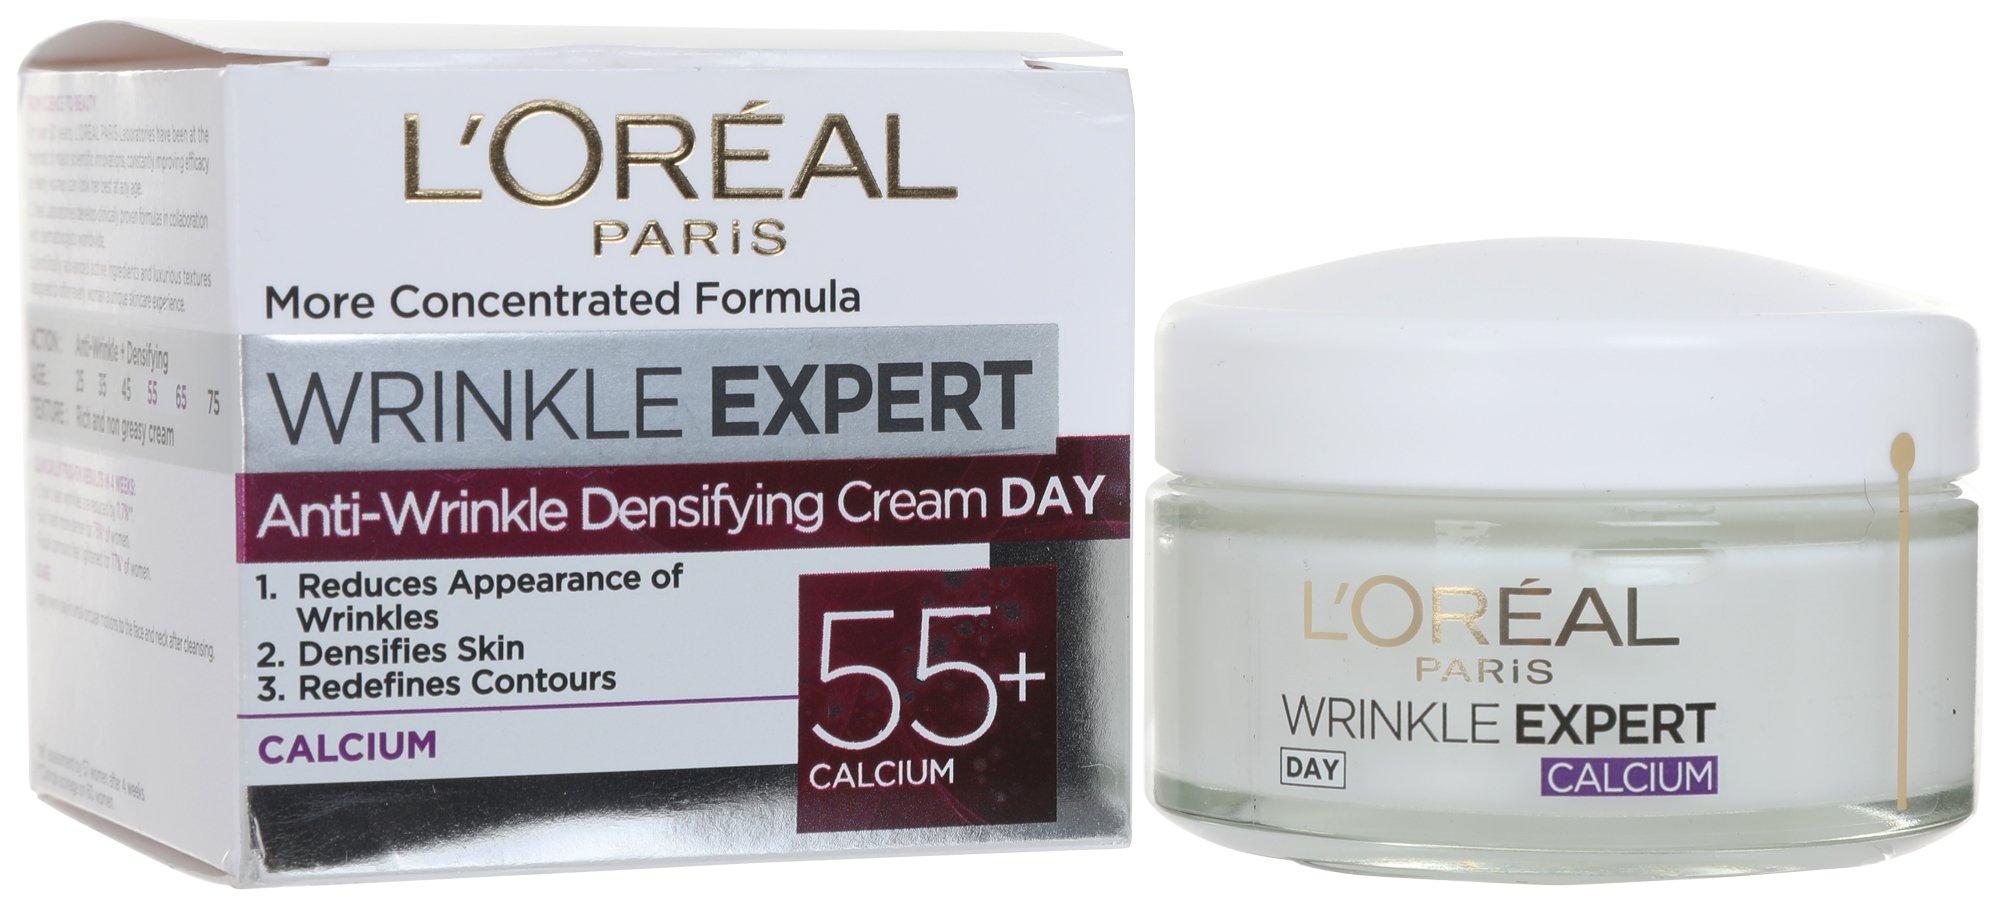 Anti-Wrinkle Densifying Night Cream